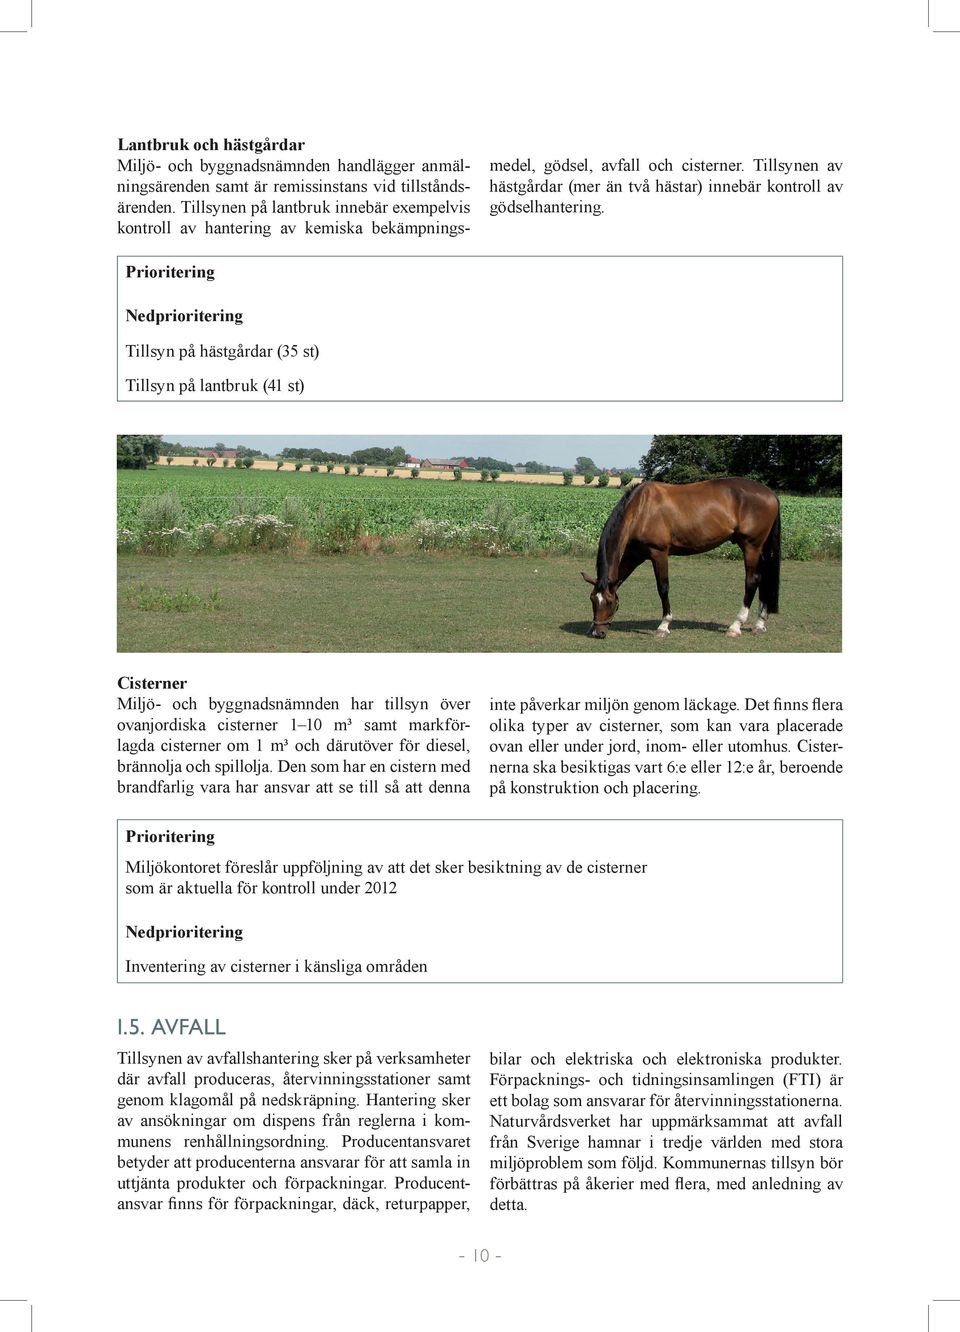 Tillsynen av hästgårdar (mer än två hästar) innebär kontroll av gödselhantering.